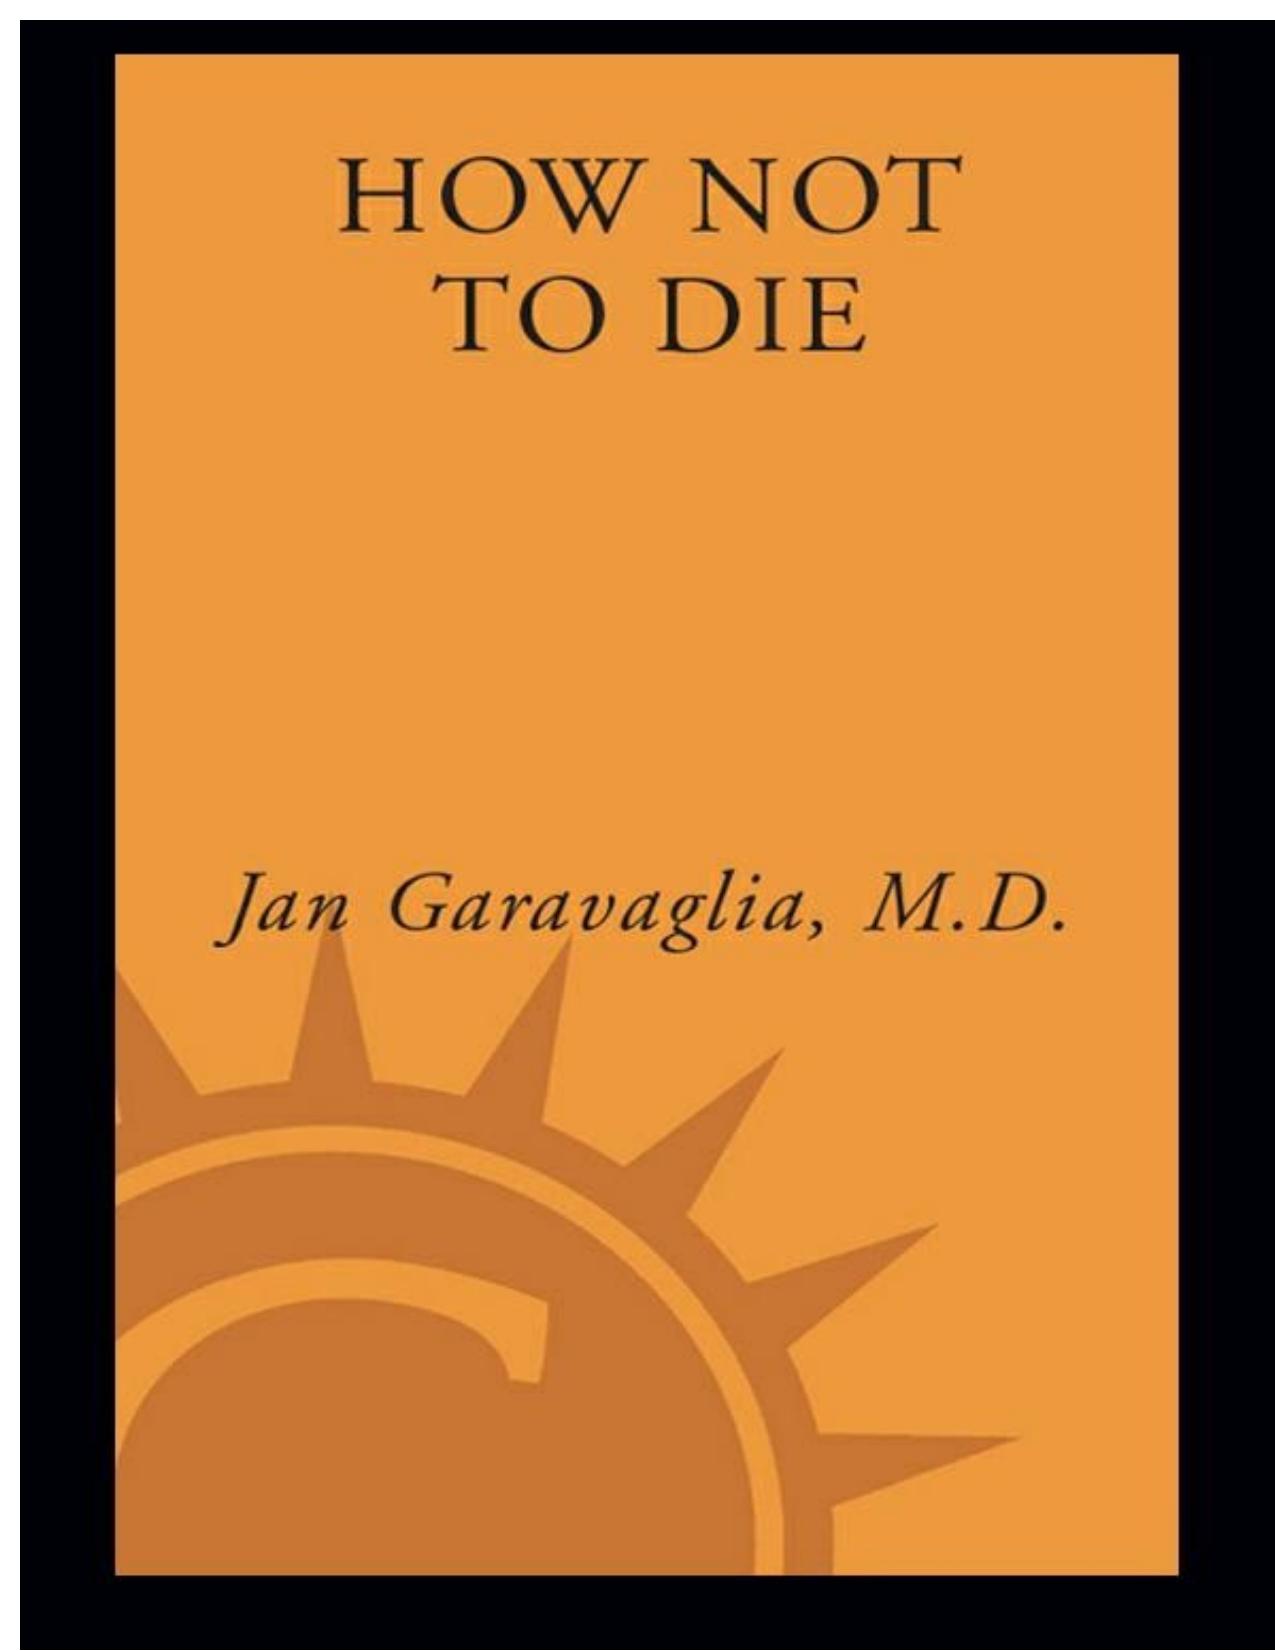 How Not to Die by Jan Garavaglia M.D